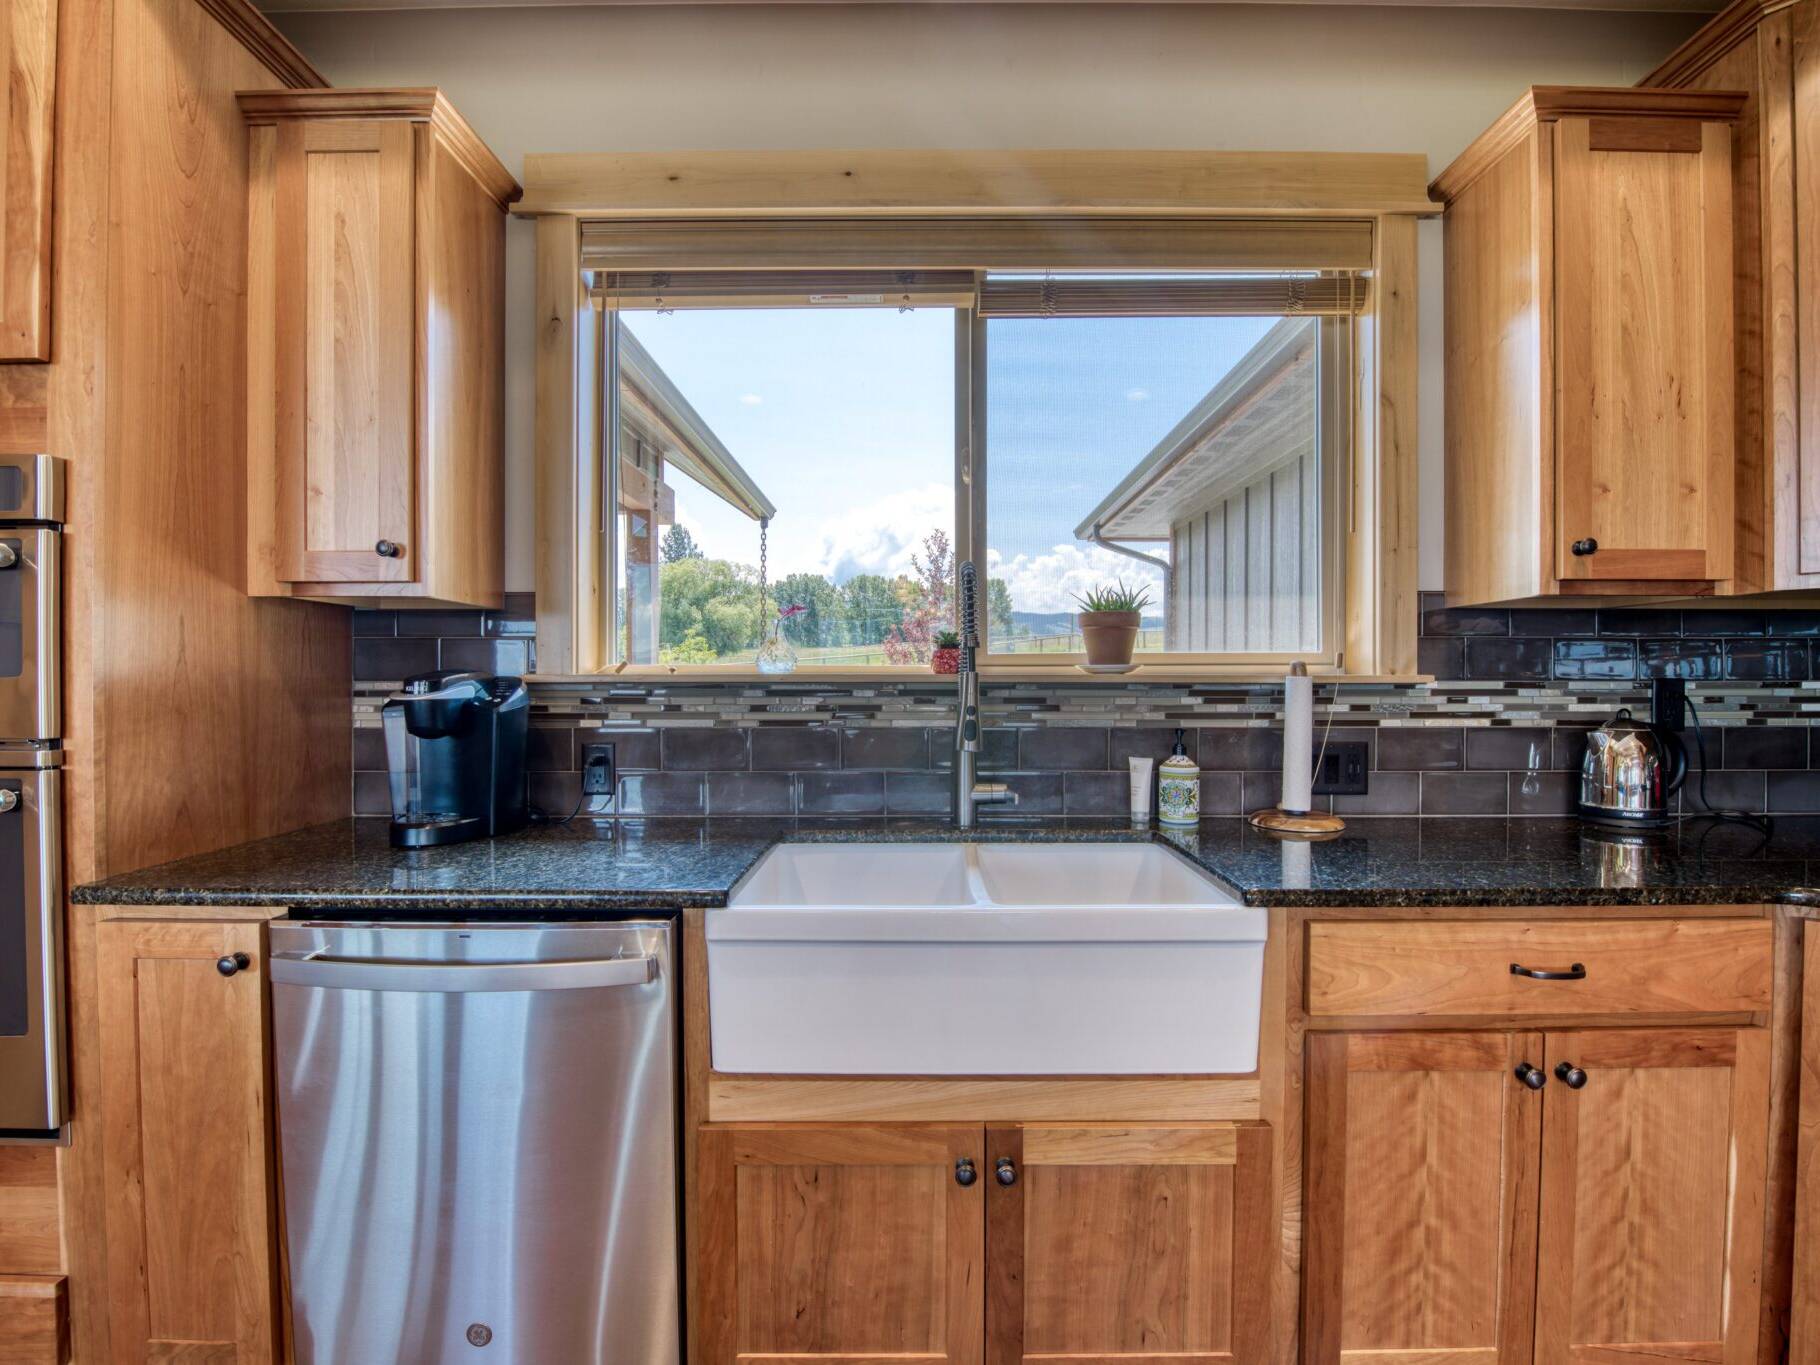 Kitchen farm sink with tile backsplash in a custom home built by Big Sky Builders in Stevensville, MT